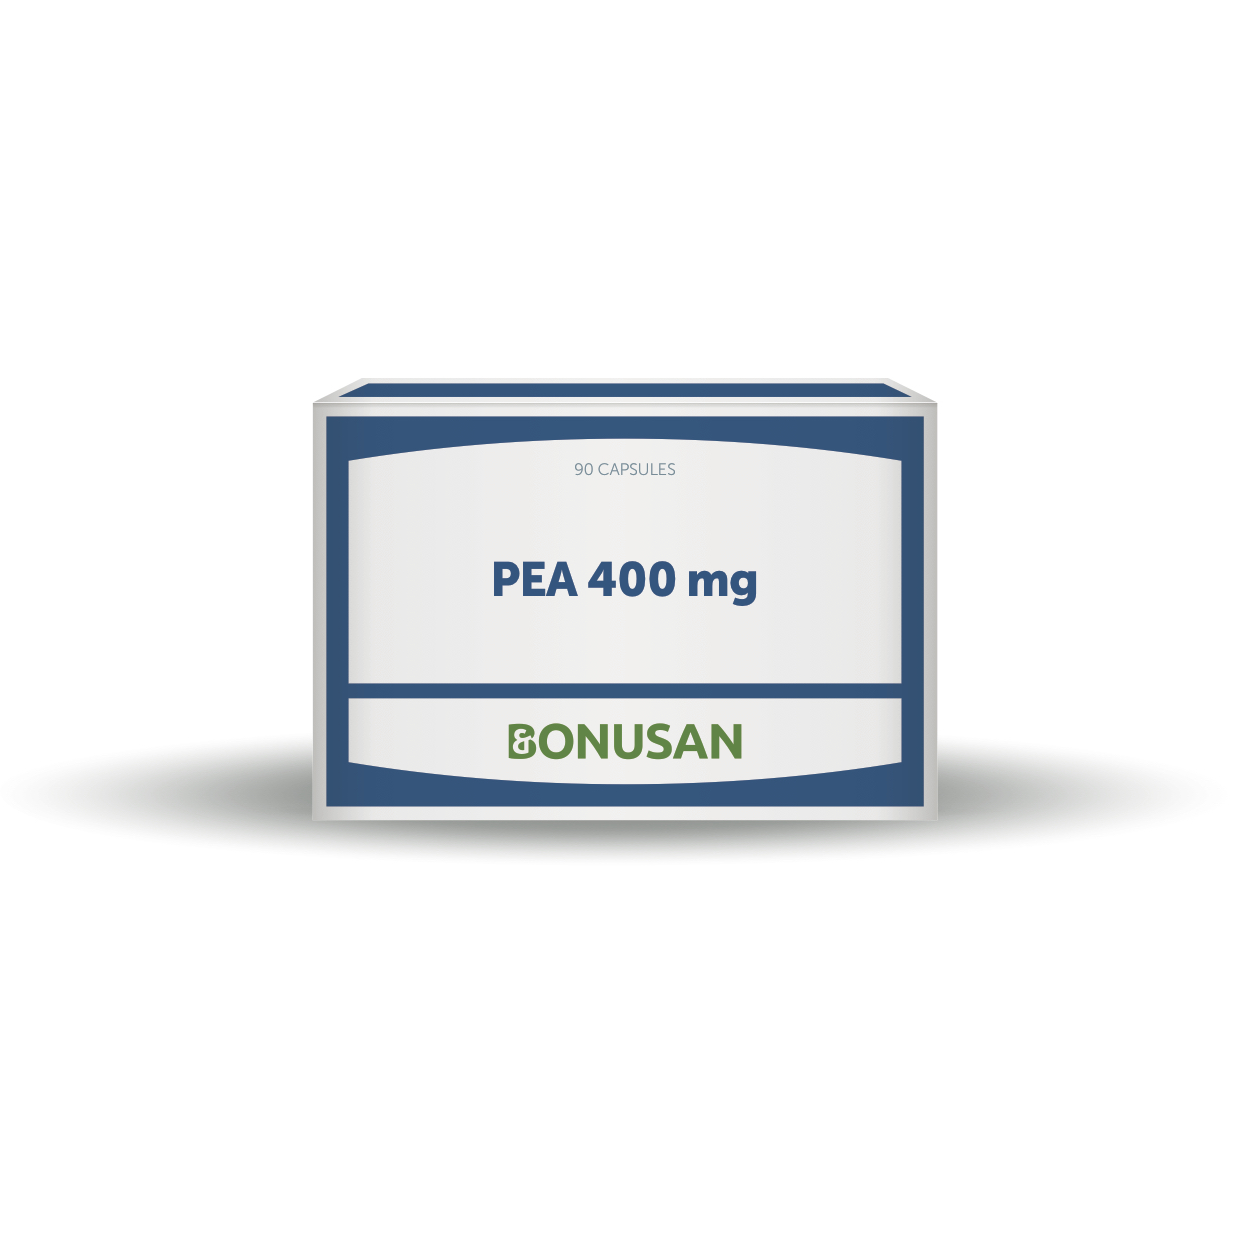 PEA 400 mg